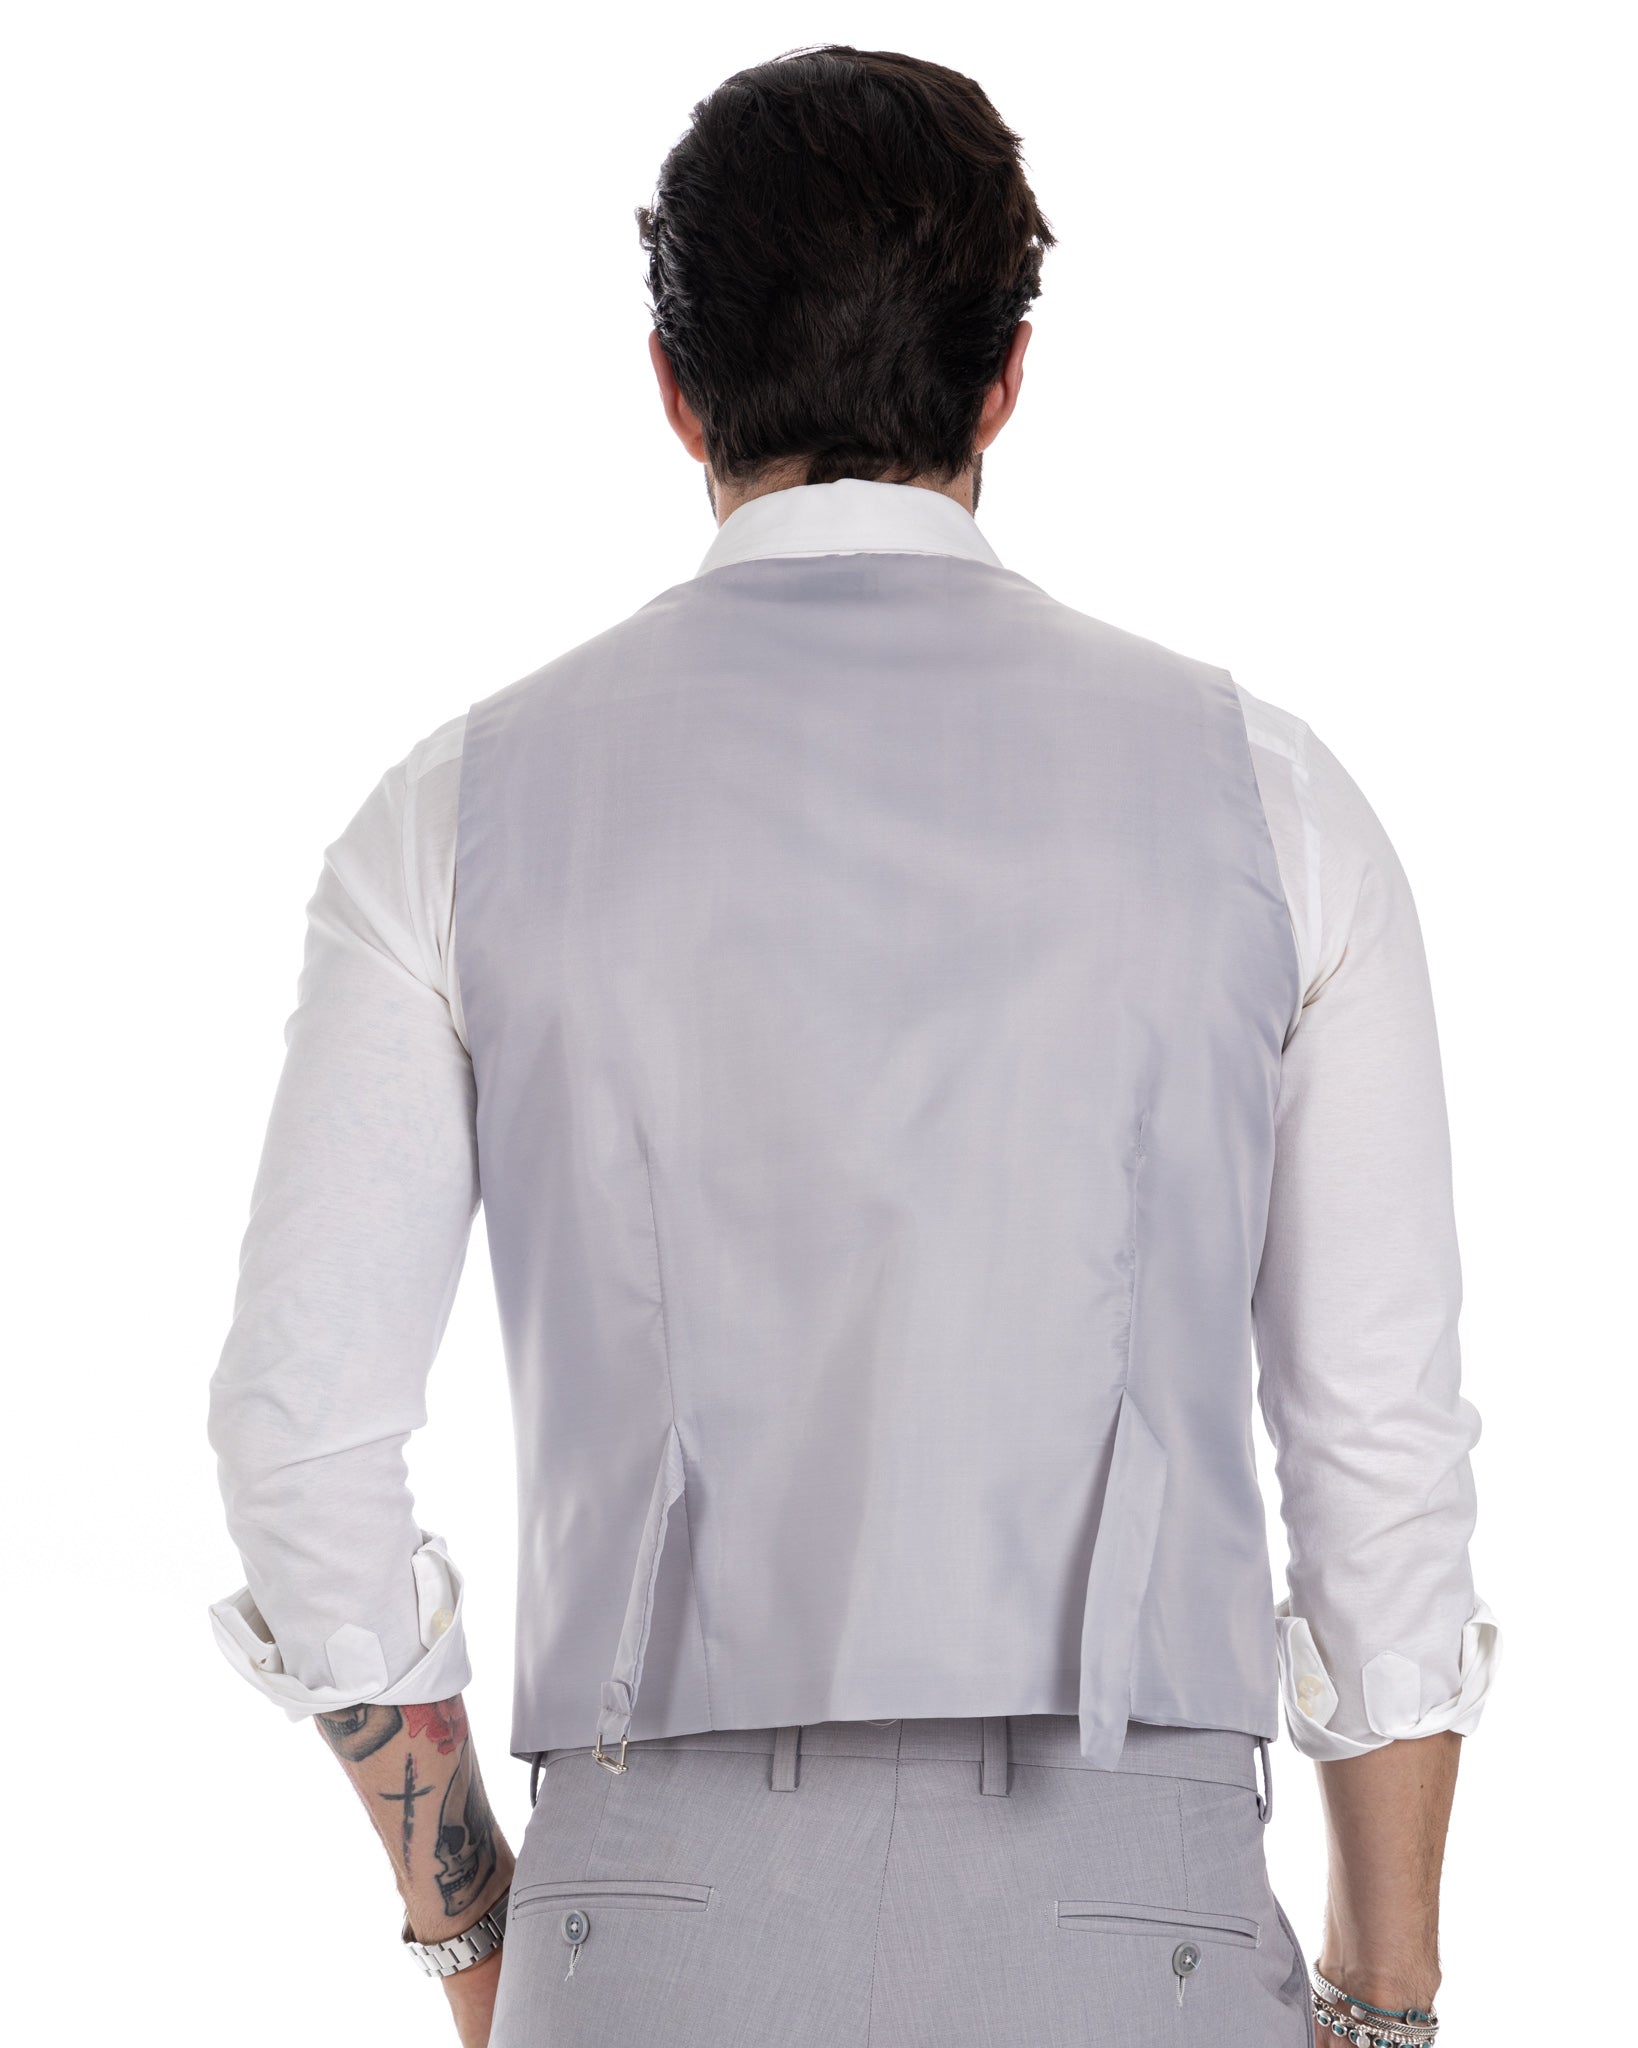 Dresden - light gray single-breasted waistcoat